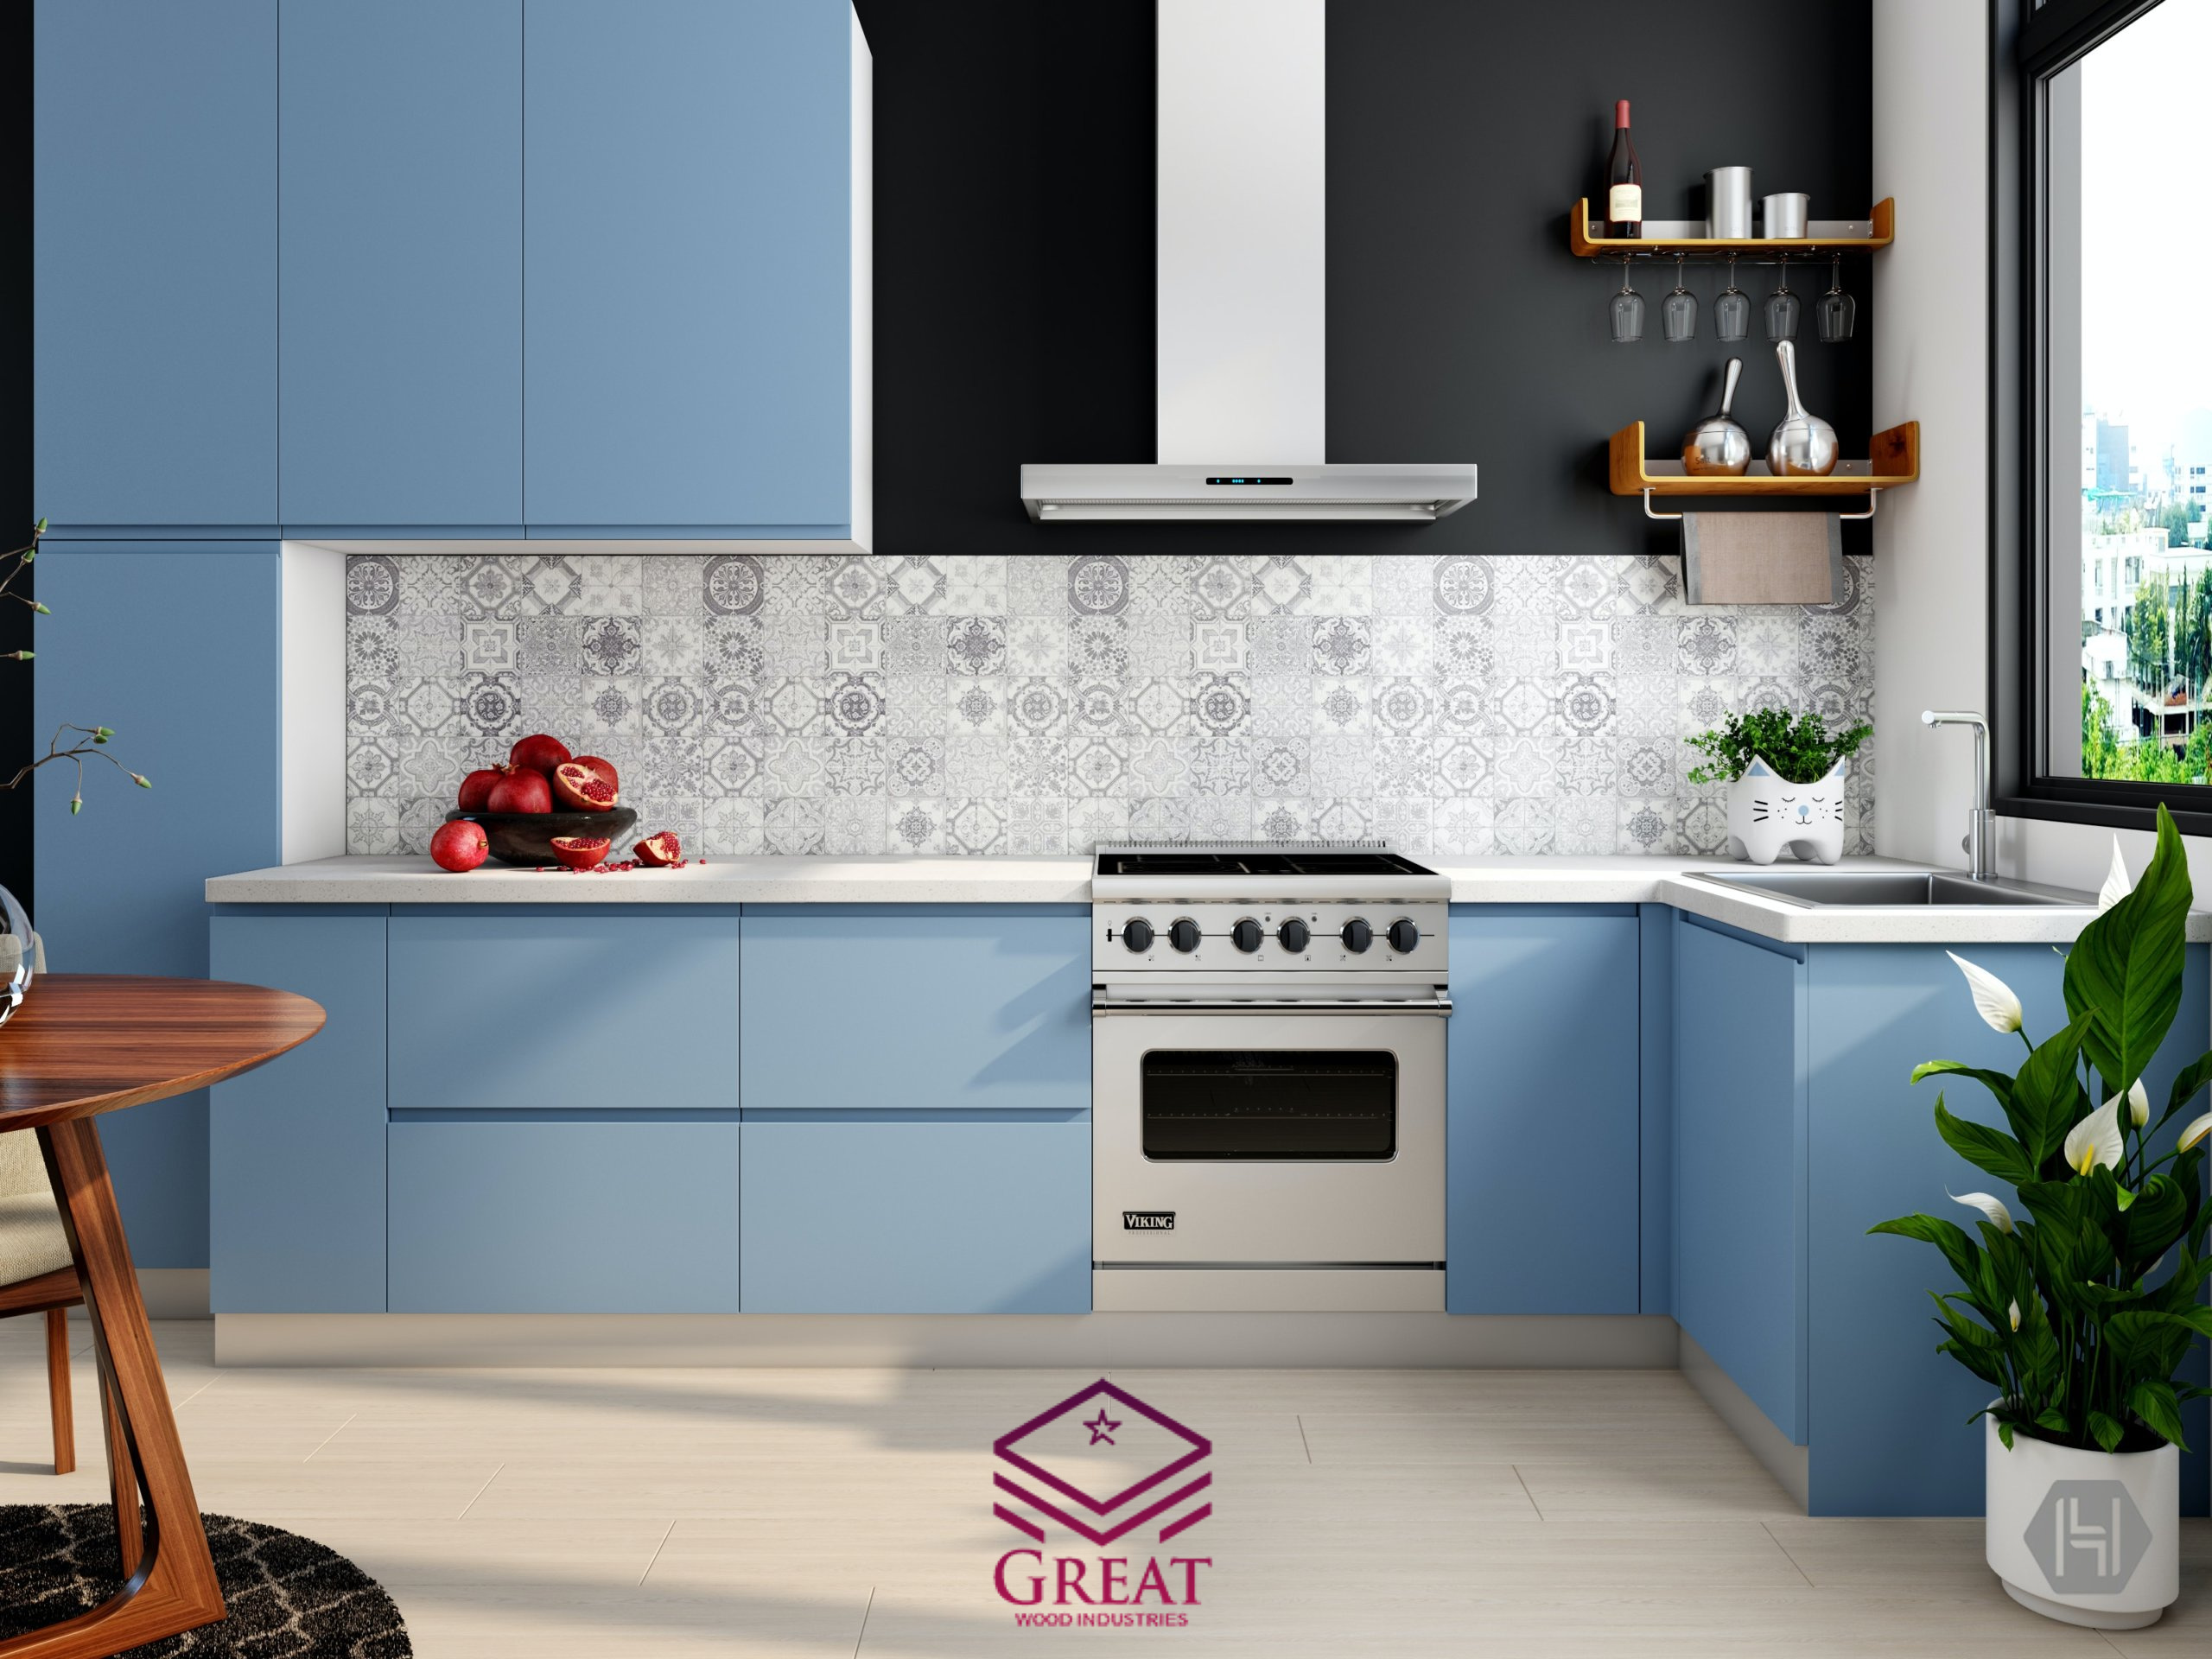 گریت کابینت | شرکت کابینت آشپزخانه گریت | Kitchen interior with blue cabinets and tiled wall 37824 scaled 1